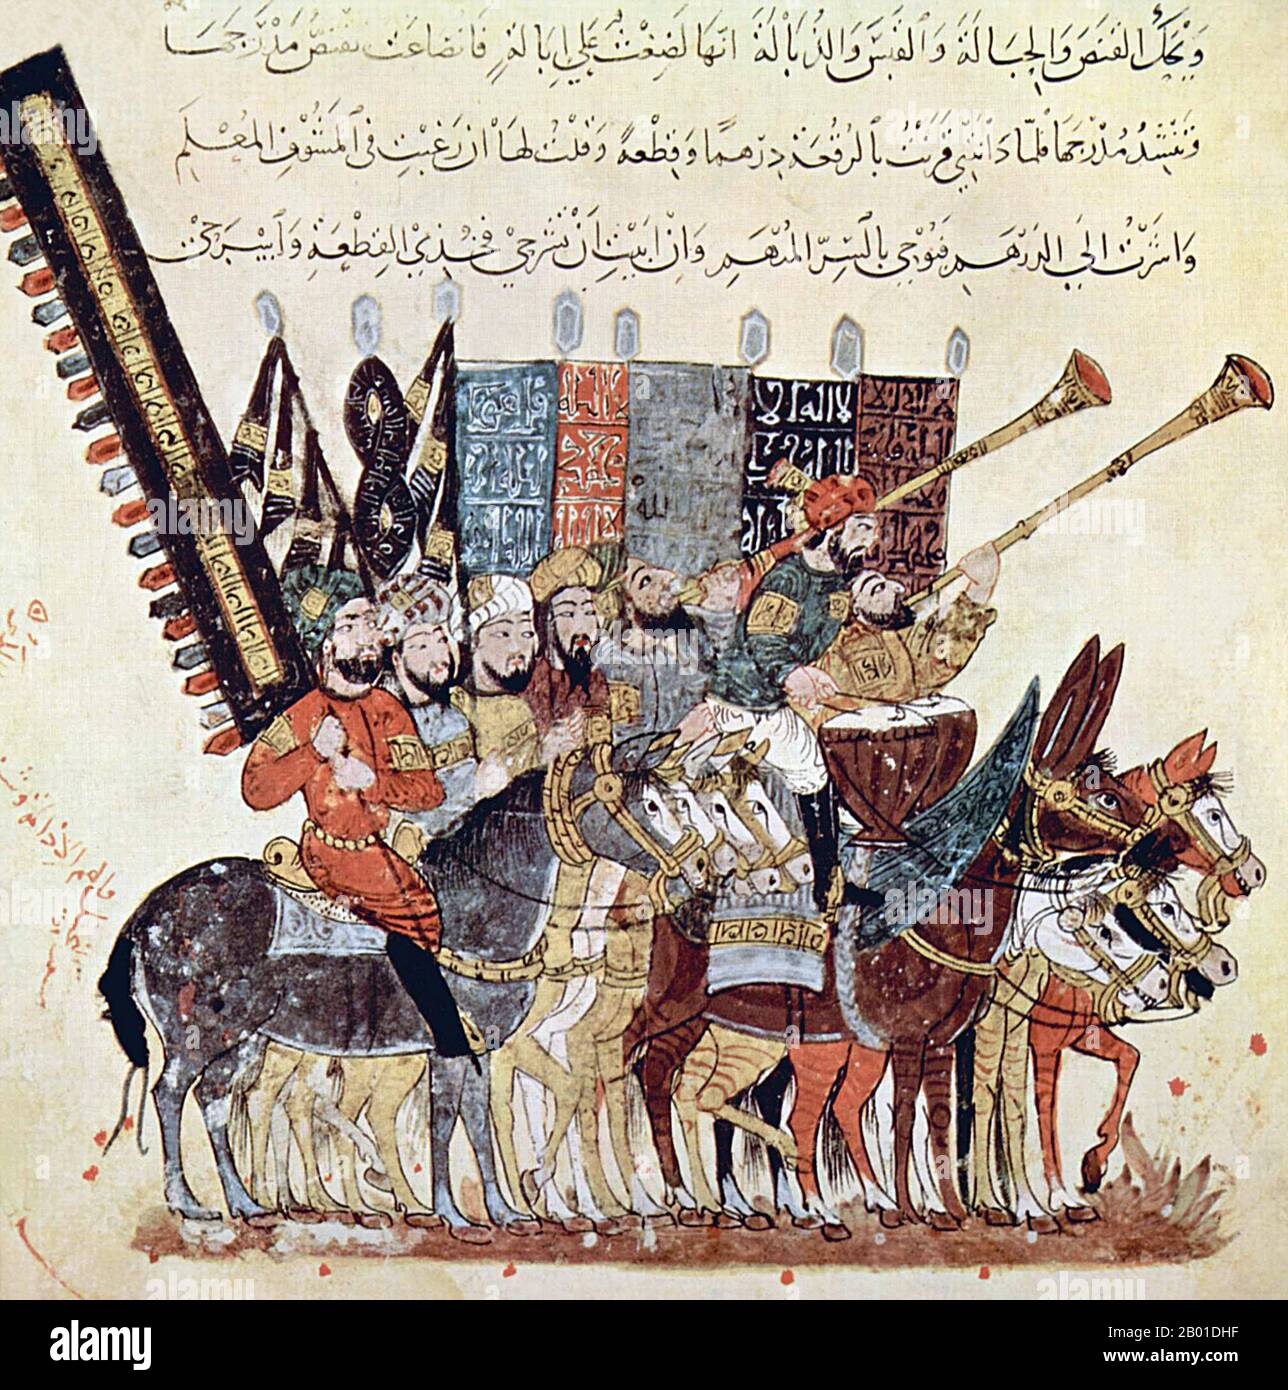 Irak/Arabie: Annonce de la fête de 'ID al-Fitr marquant la fin du mois Saint du Ramadan. Miniature par Yahya ibn Mahmud al-Wasiti (fl. 13th siècle), 1237 ce. Yahyâ ibn Mahmûd al-Wâsitî était un artiste islamique arabe de 13th siècles. Al-Wasiti est né à Wasit, dans le sud de l'Irak. Il a été noté pour ses illustrations du Maqam d'al-Hariri. Maqāma (littéralement «assemblées») sont un (à l'origine) genre littéraire arabe de prose rimé avec des intervalles de poésie dans lesquels l'extravagance rhétorique est évidente. L'auteur du 10th siècle Badī' al-Zaman al-Hamadhāni aurait inventé la forme. Banque D'Images